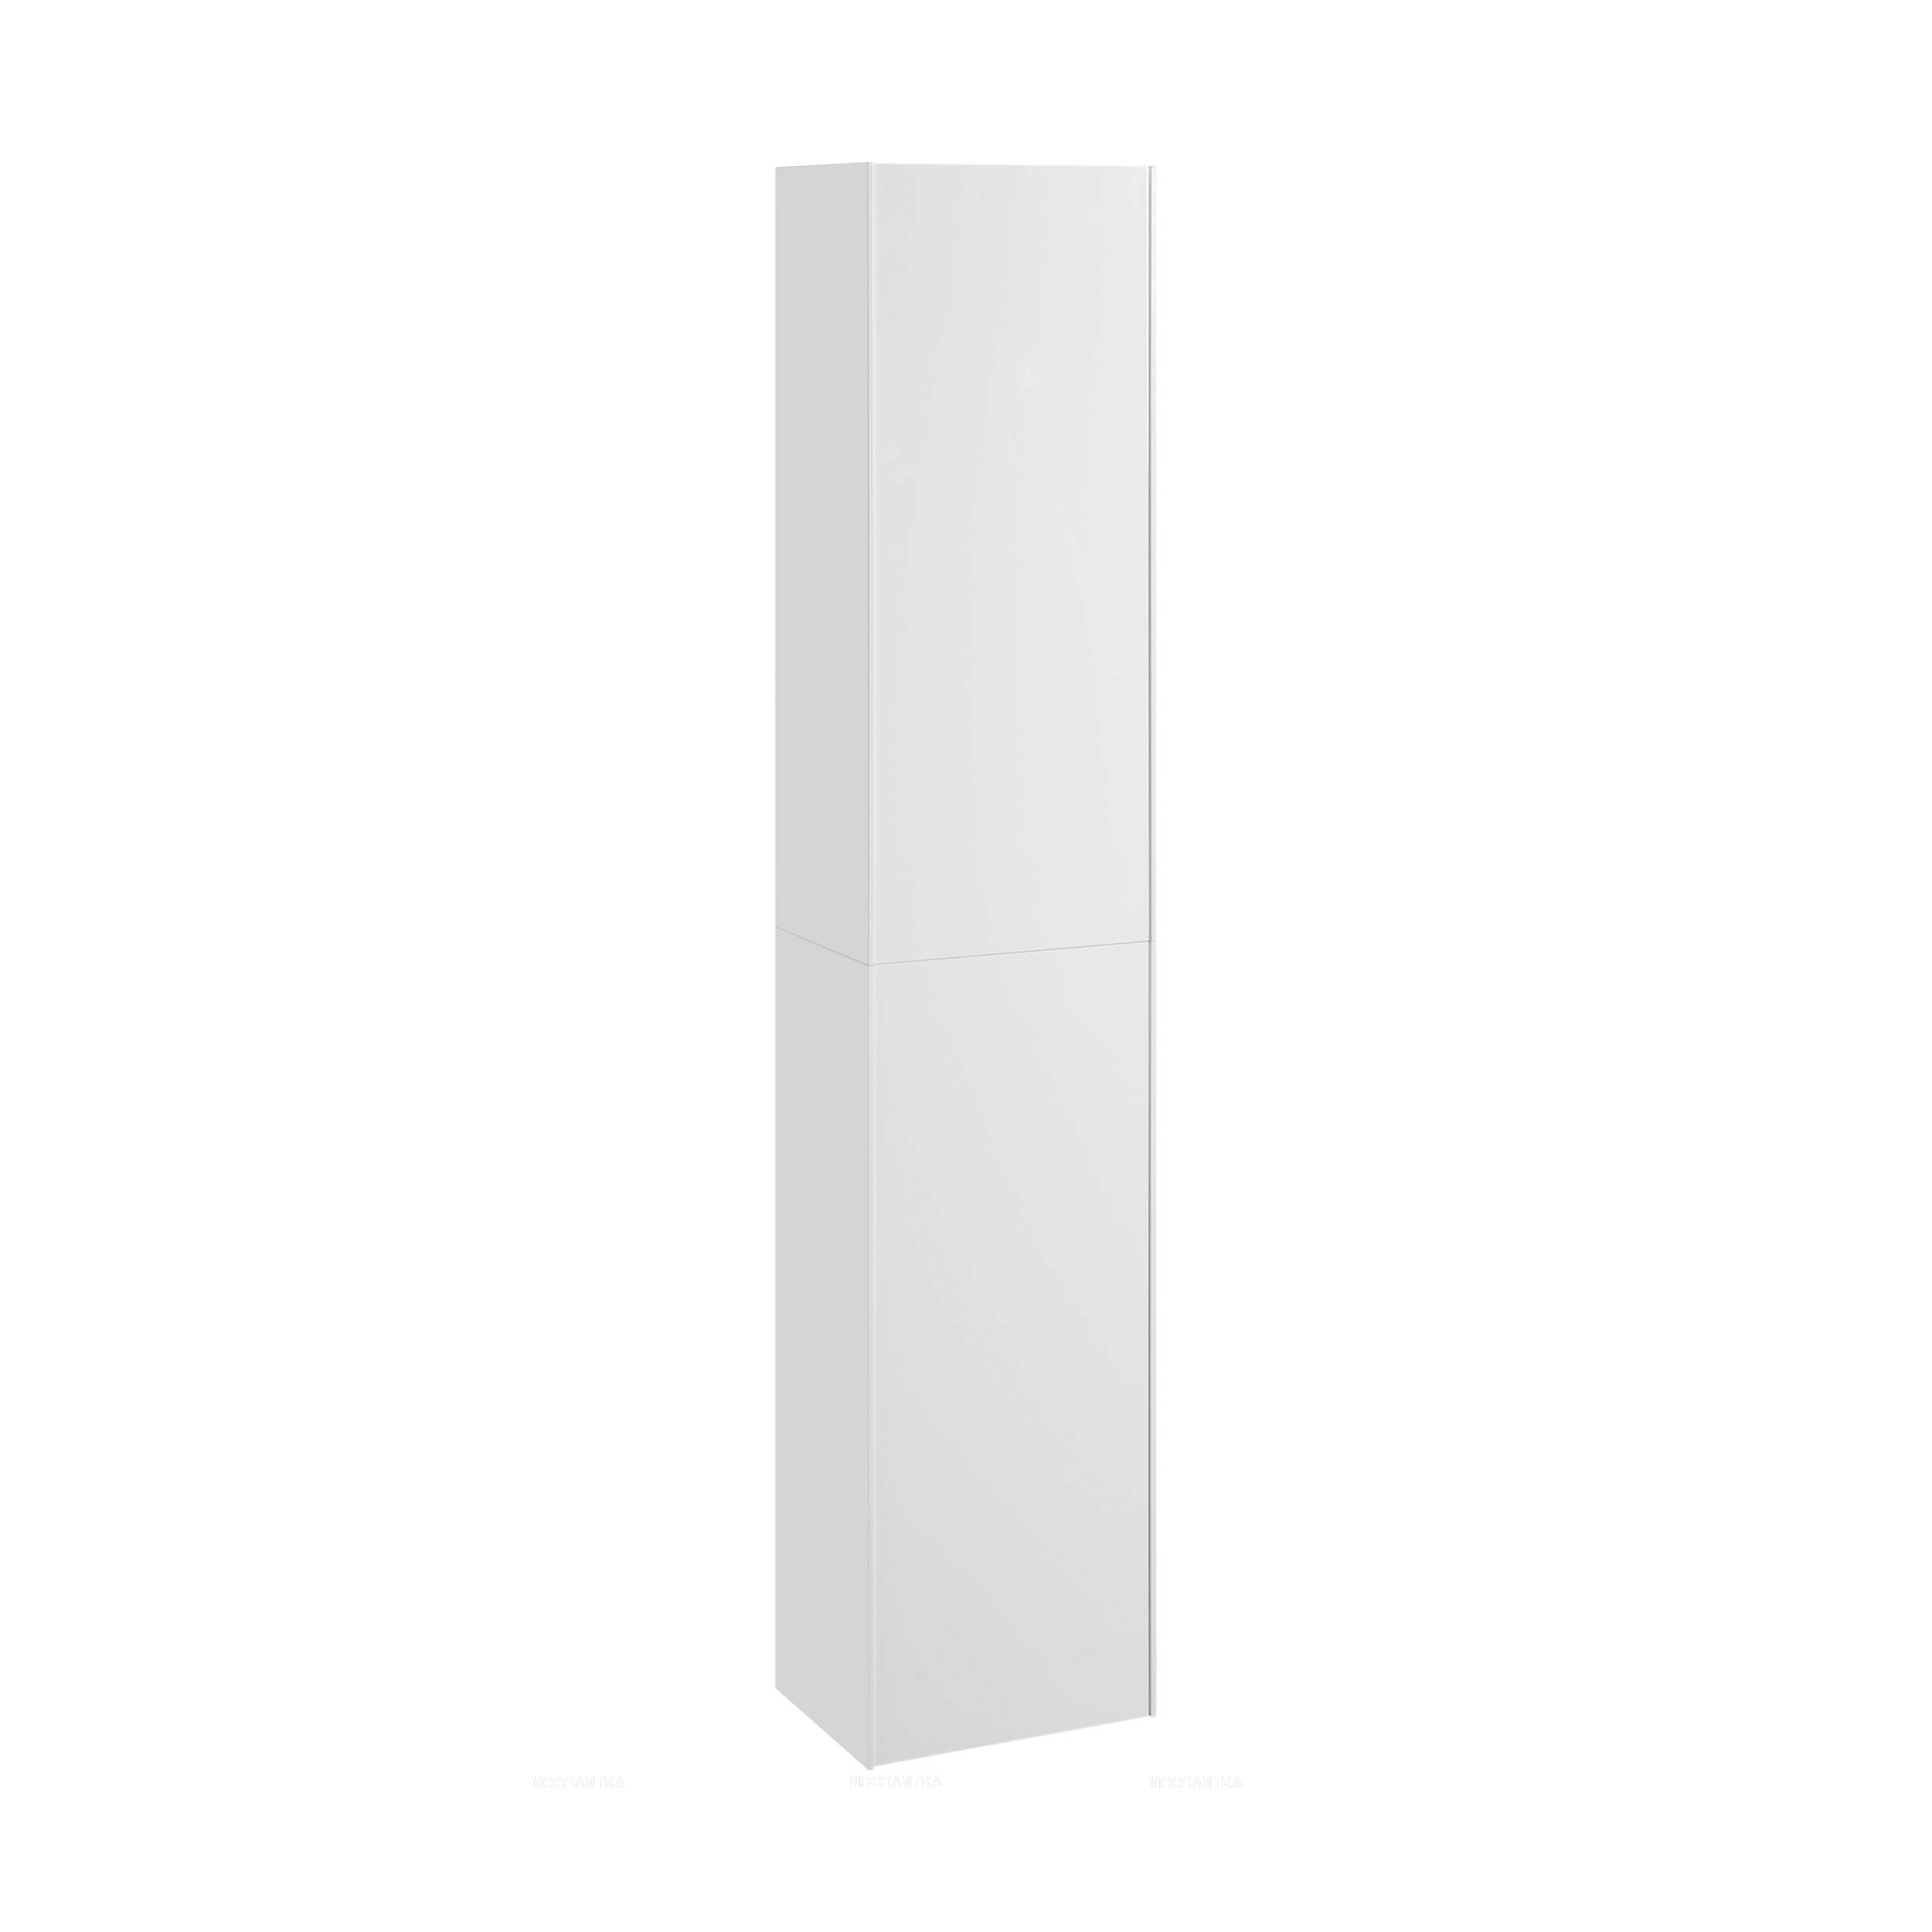 Шкаф навесной Aquaton Асти белый матовый, белый глянец 1A262903AX2B0 - изображение 3